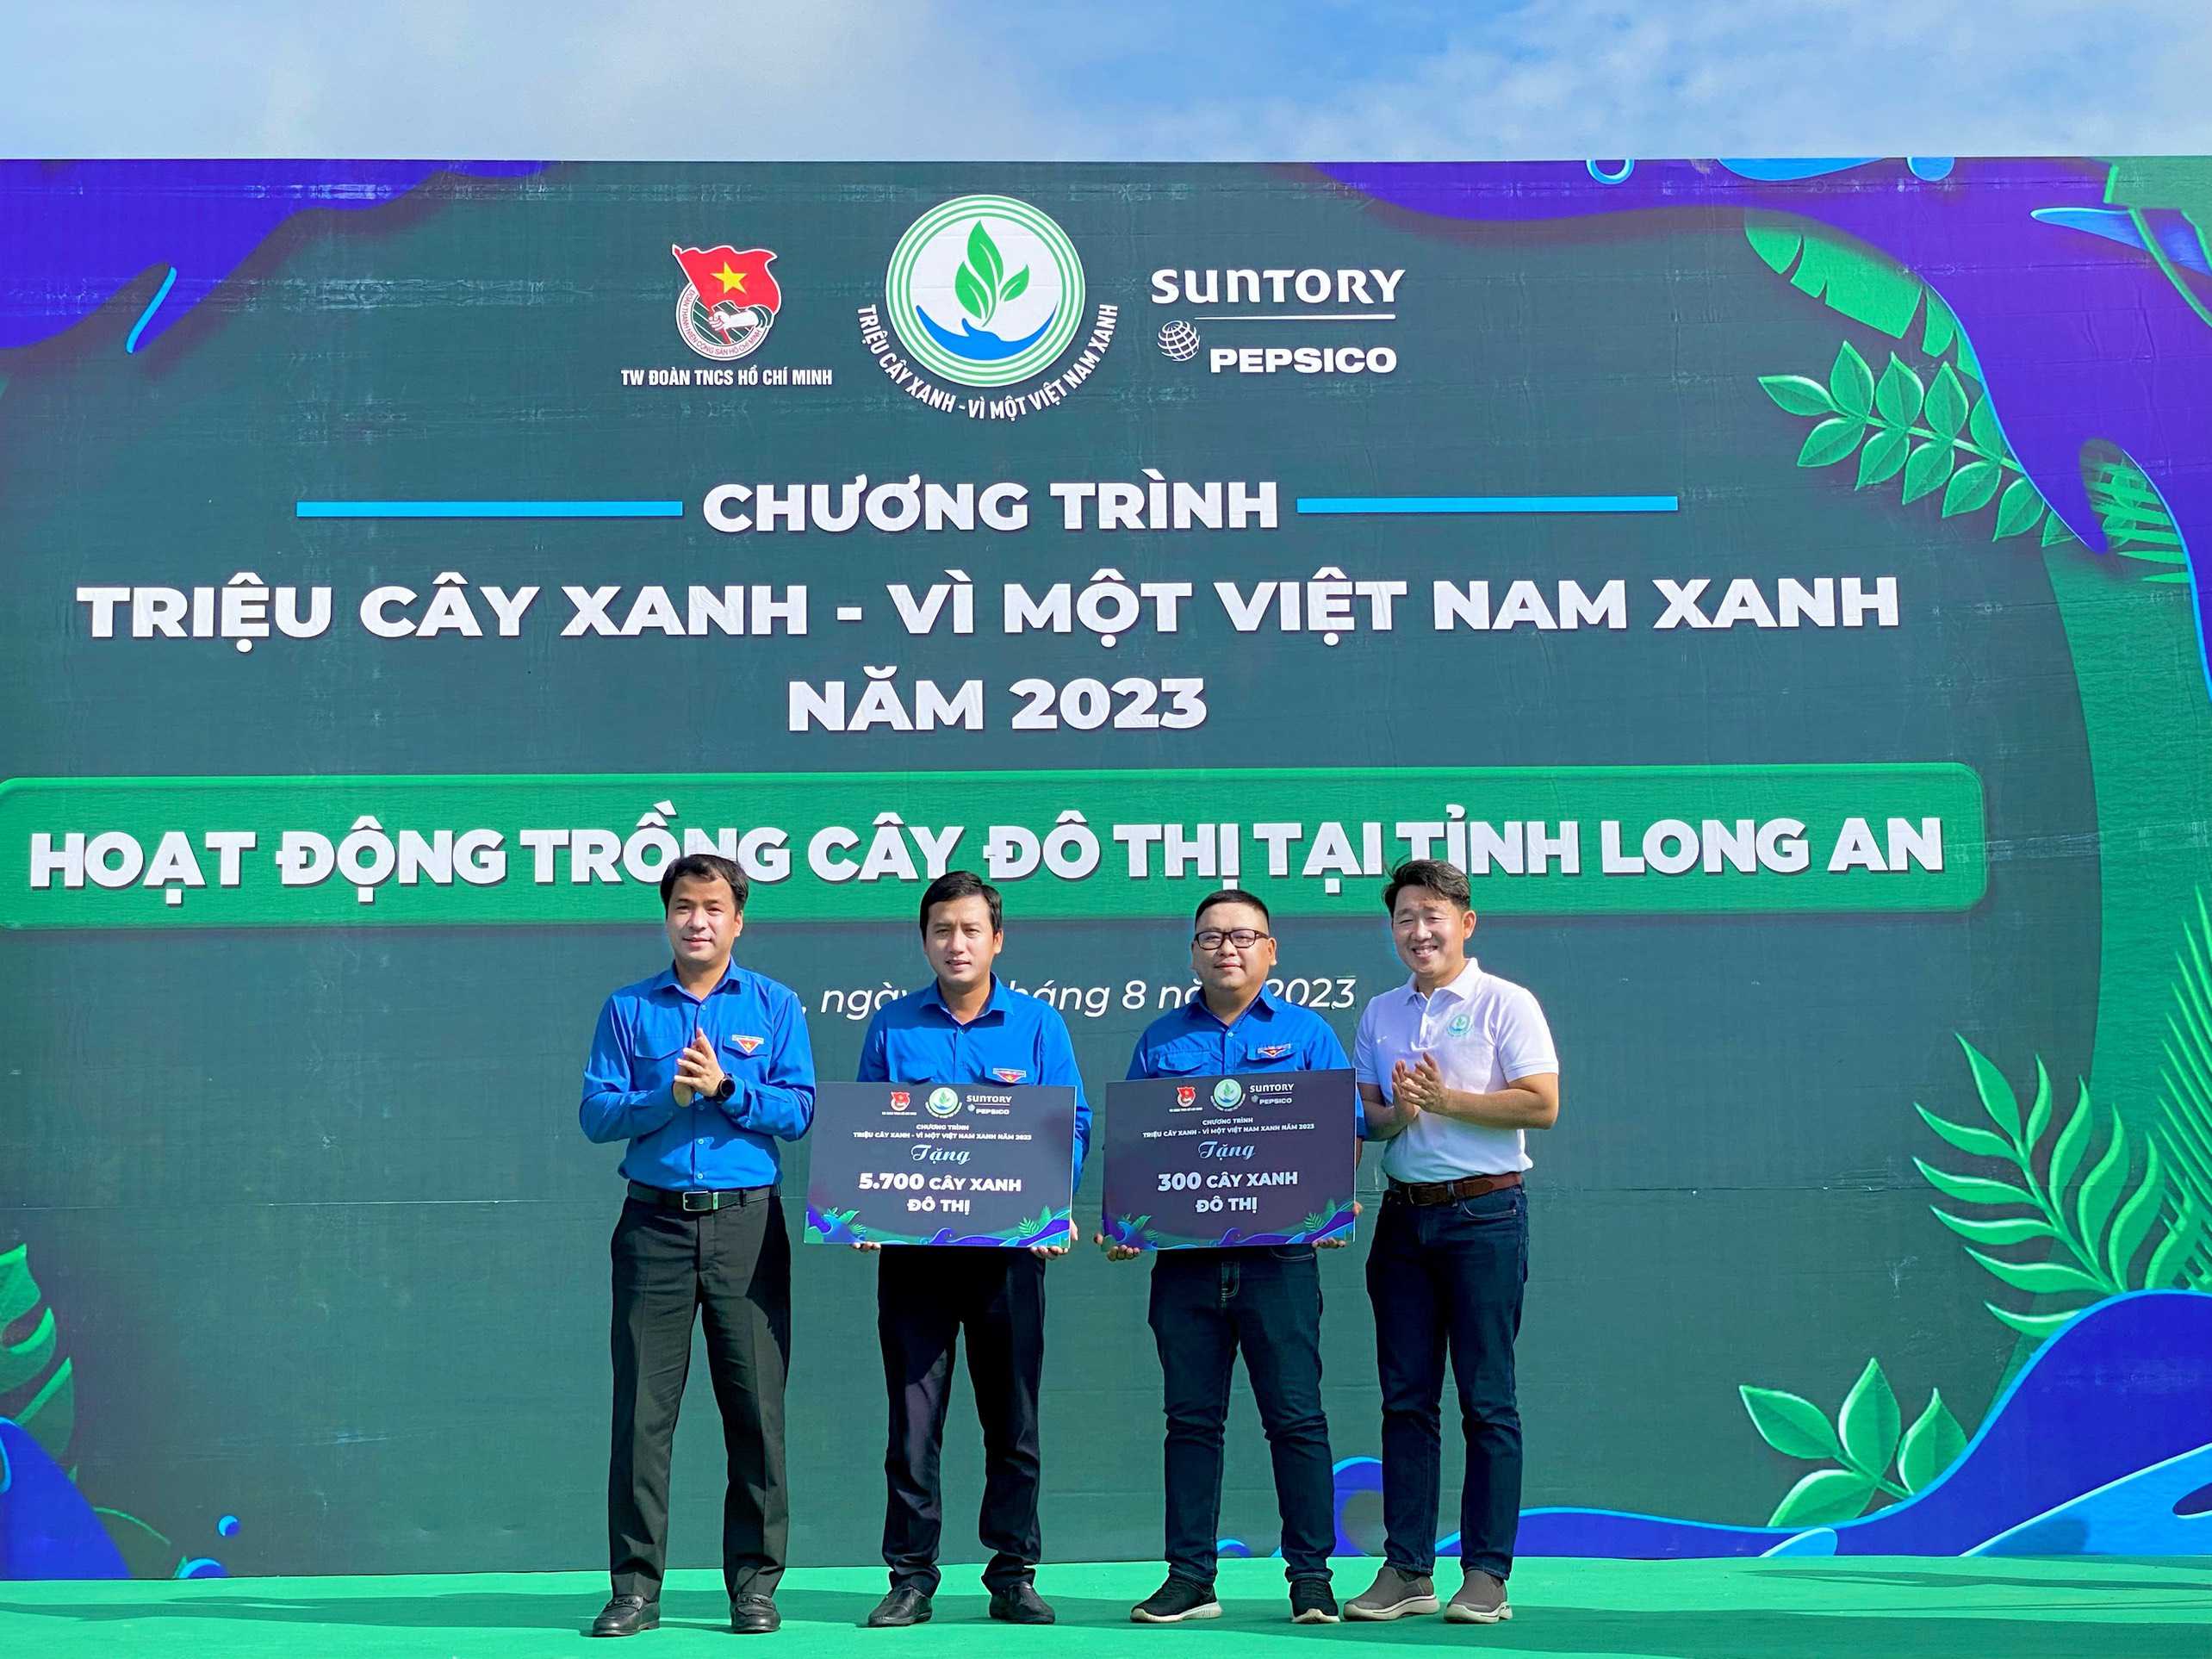 Phát động trồng cây đô thị trong khuôn khổ chương trình“Triệu cây xanh – Vì một Việt Nam xanh” năm 2023 tại tỉnh Long An